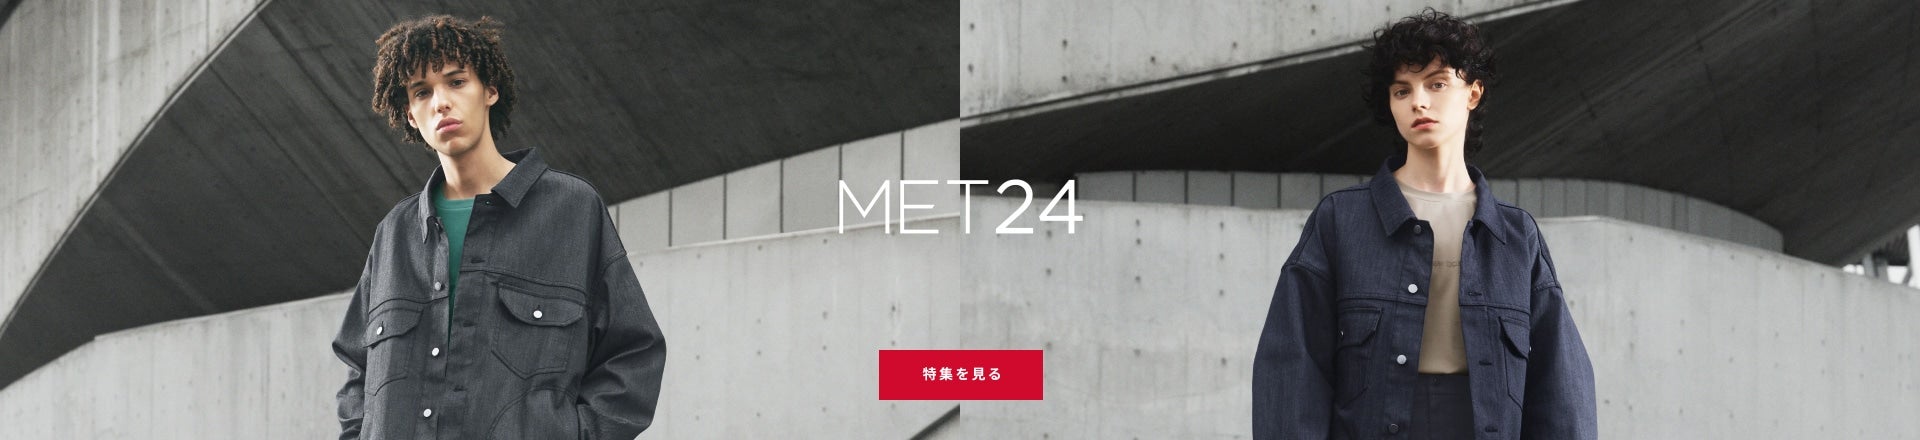 MET24